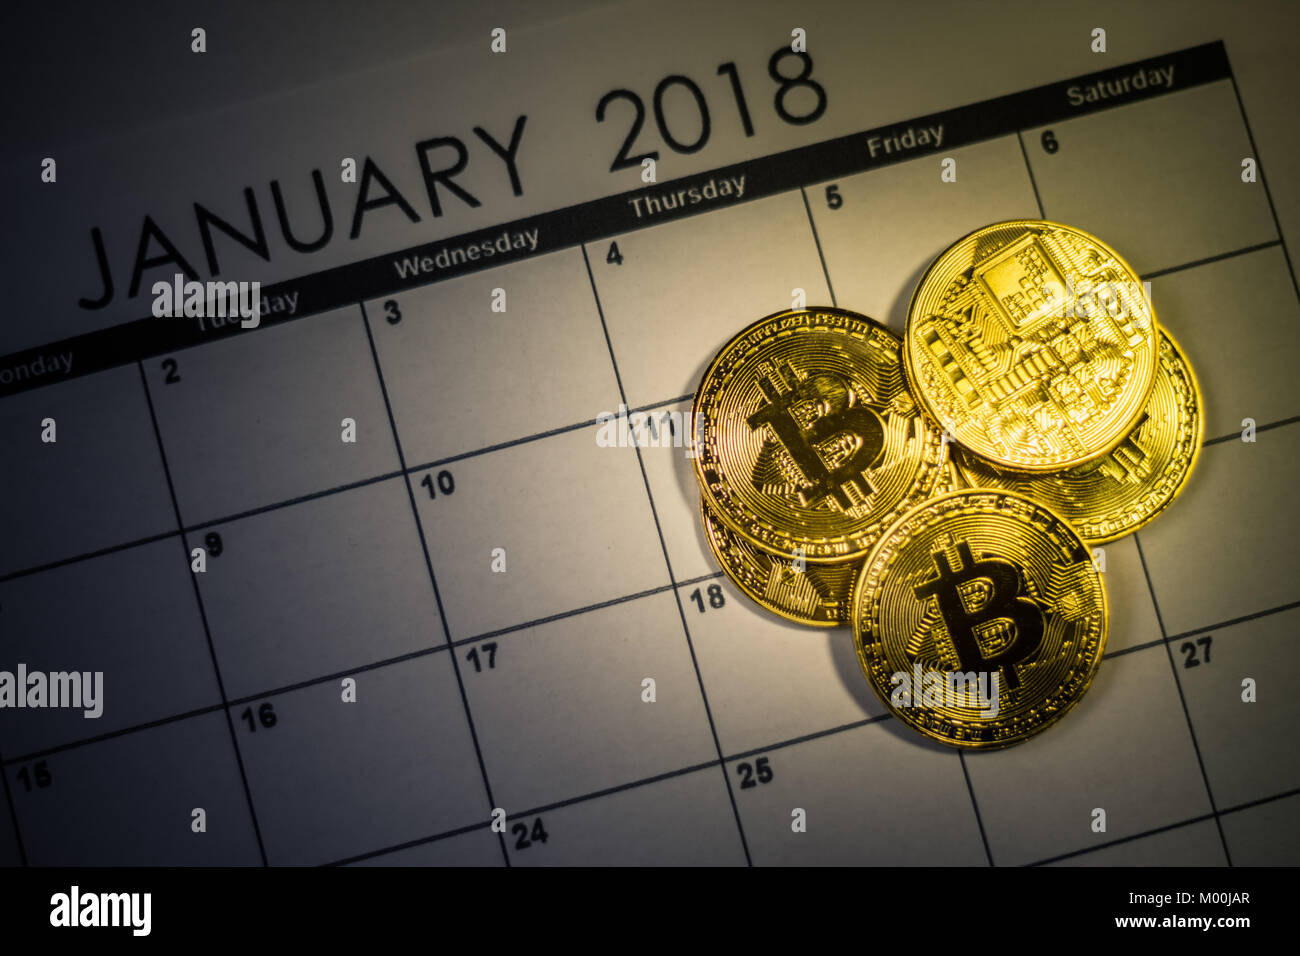 Bitcoin golden coins on 2018 calendar file Stock Photo